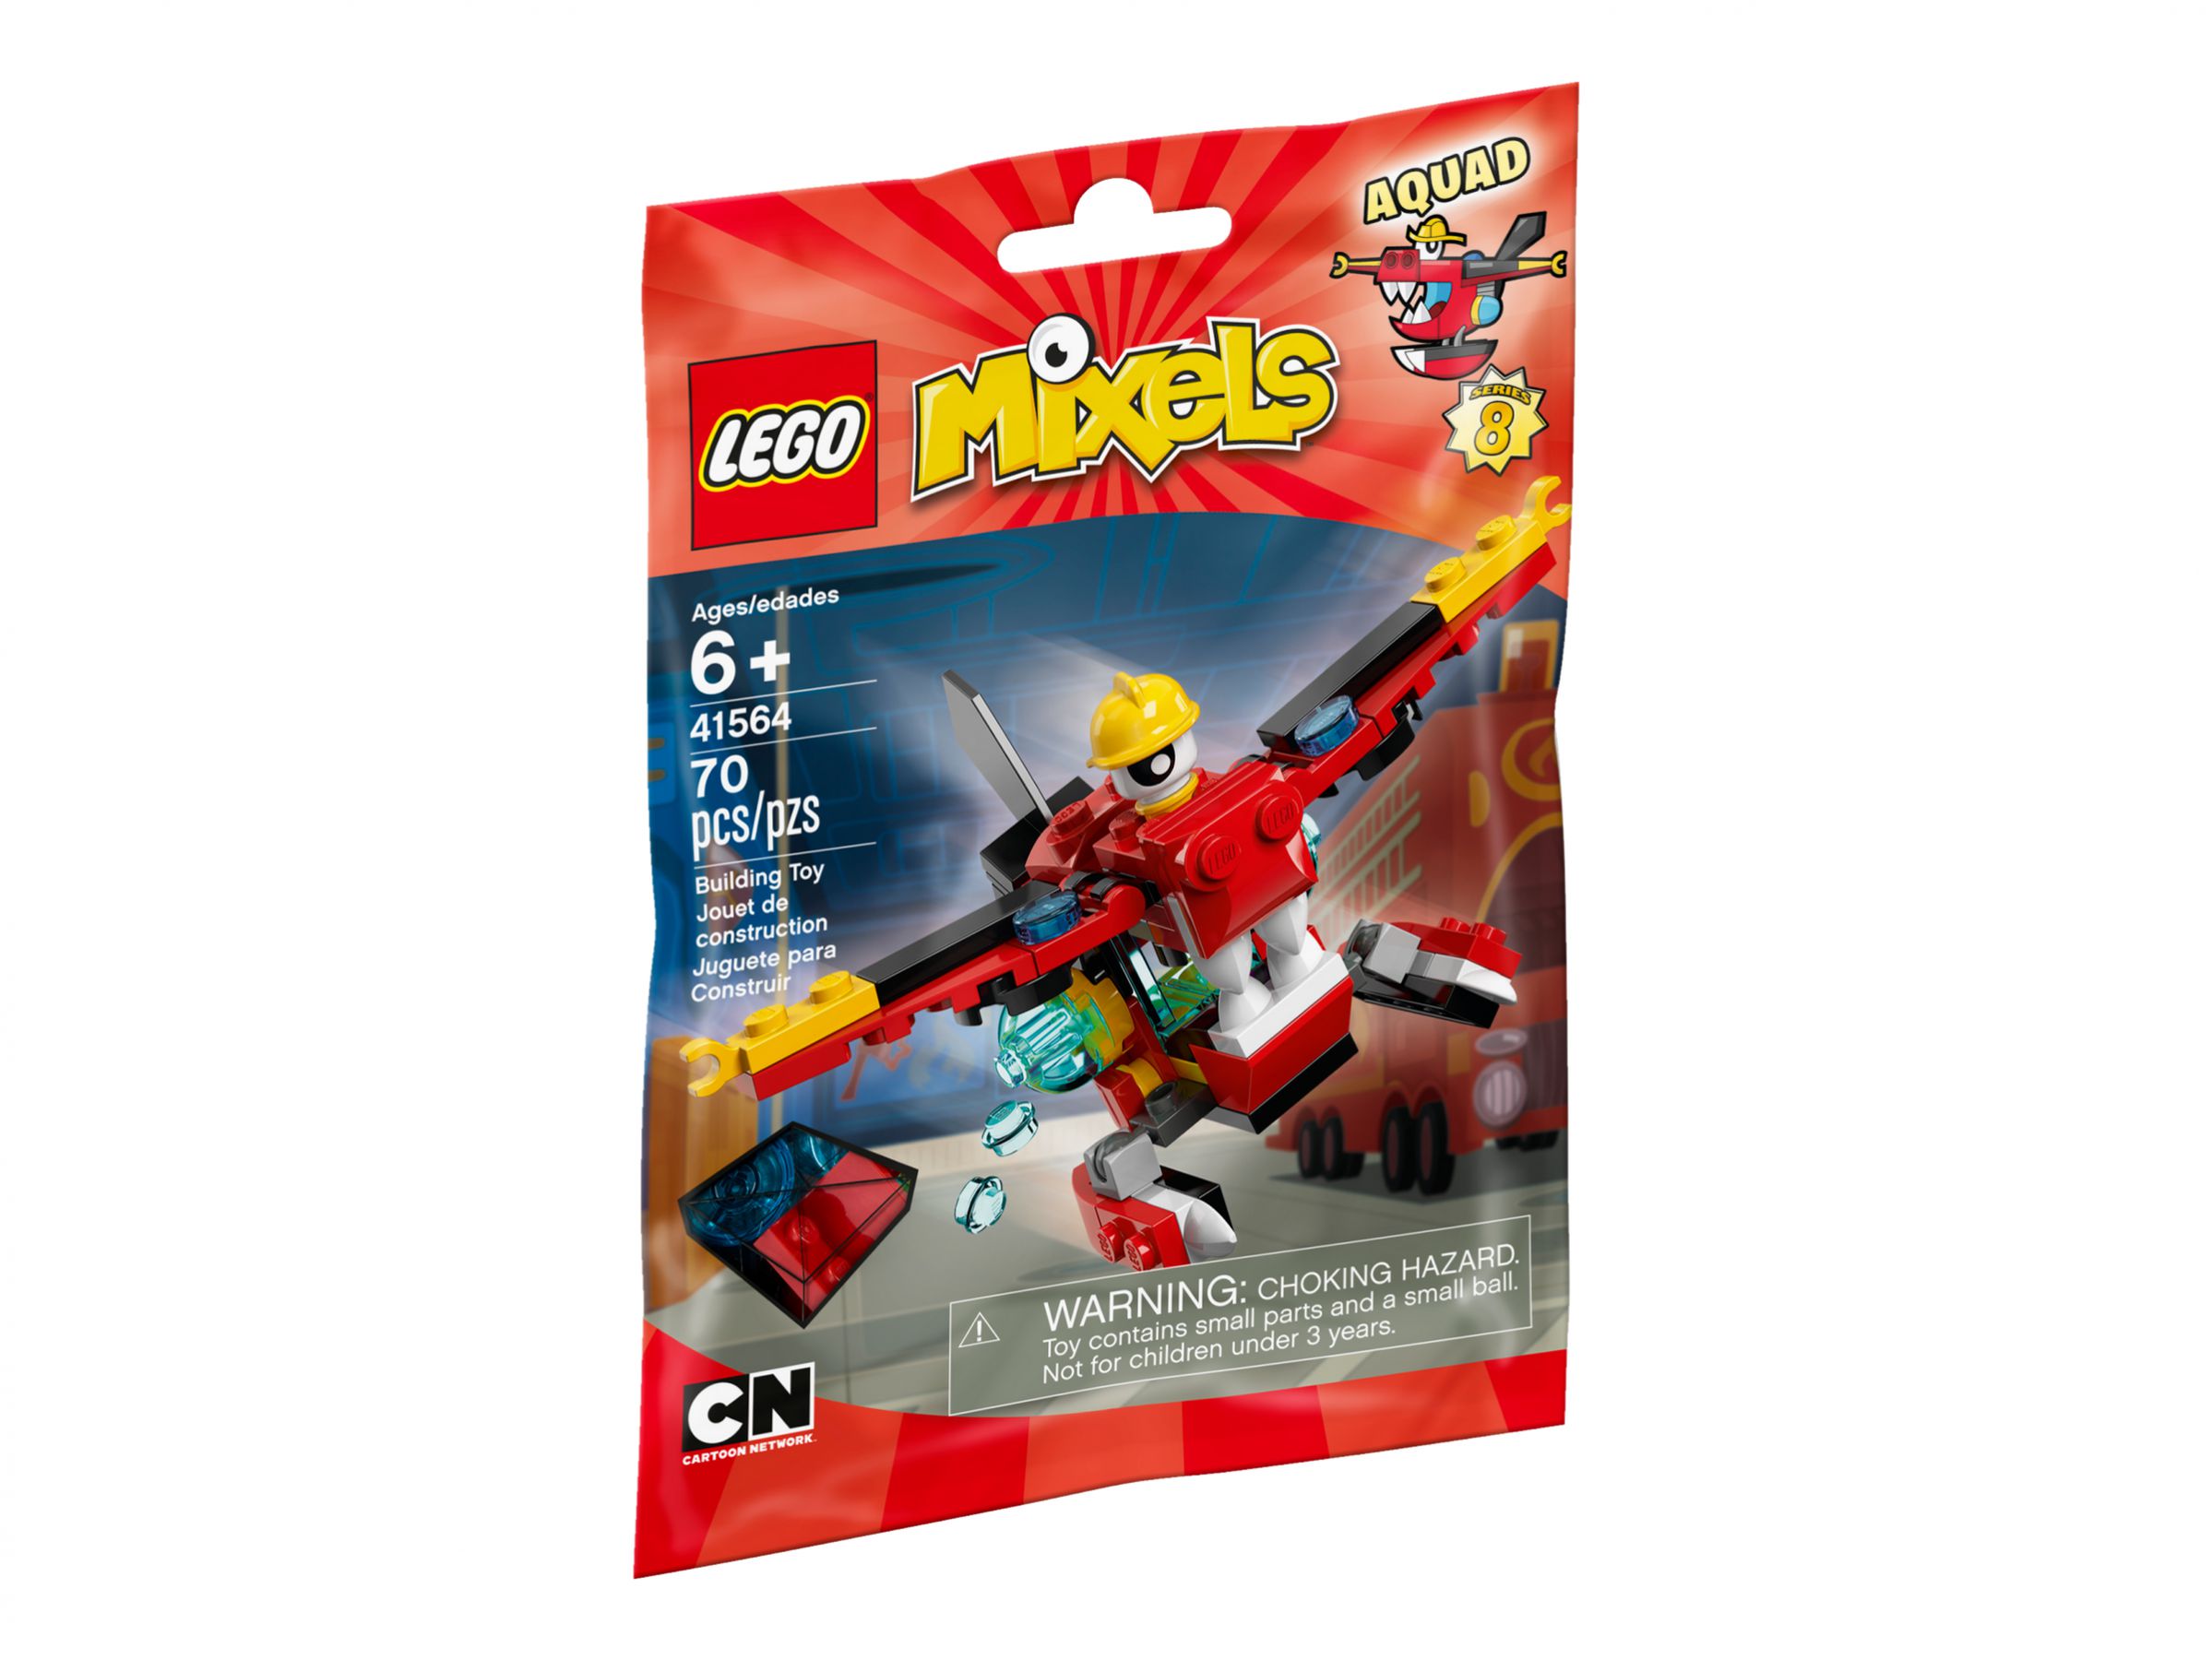 LEGO Mixels 41564 Aquad LEGO_41564_alt1.jpg